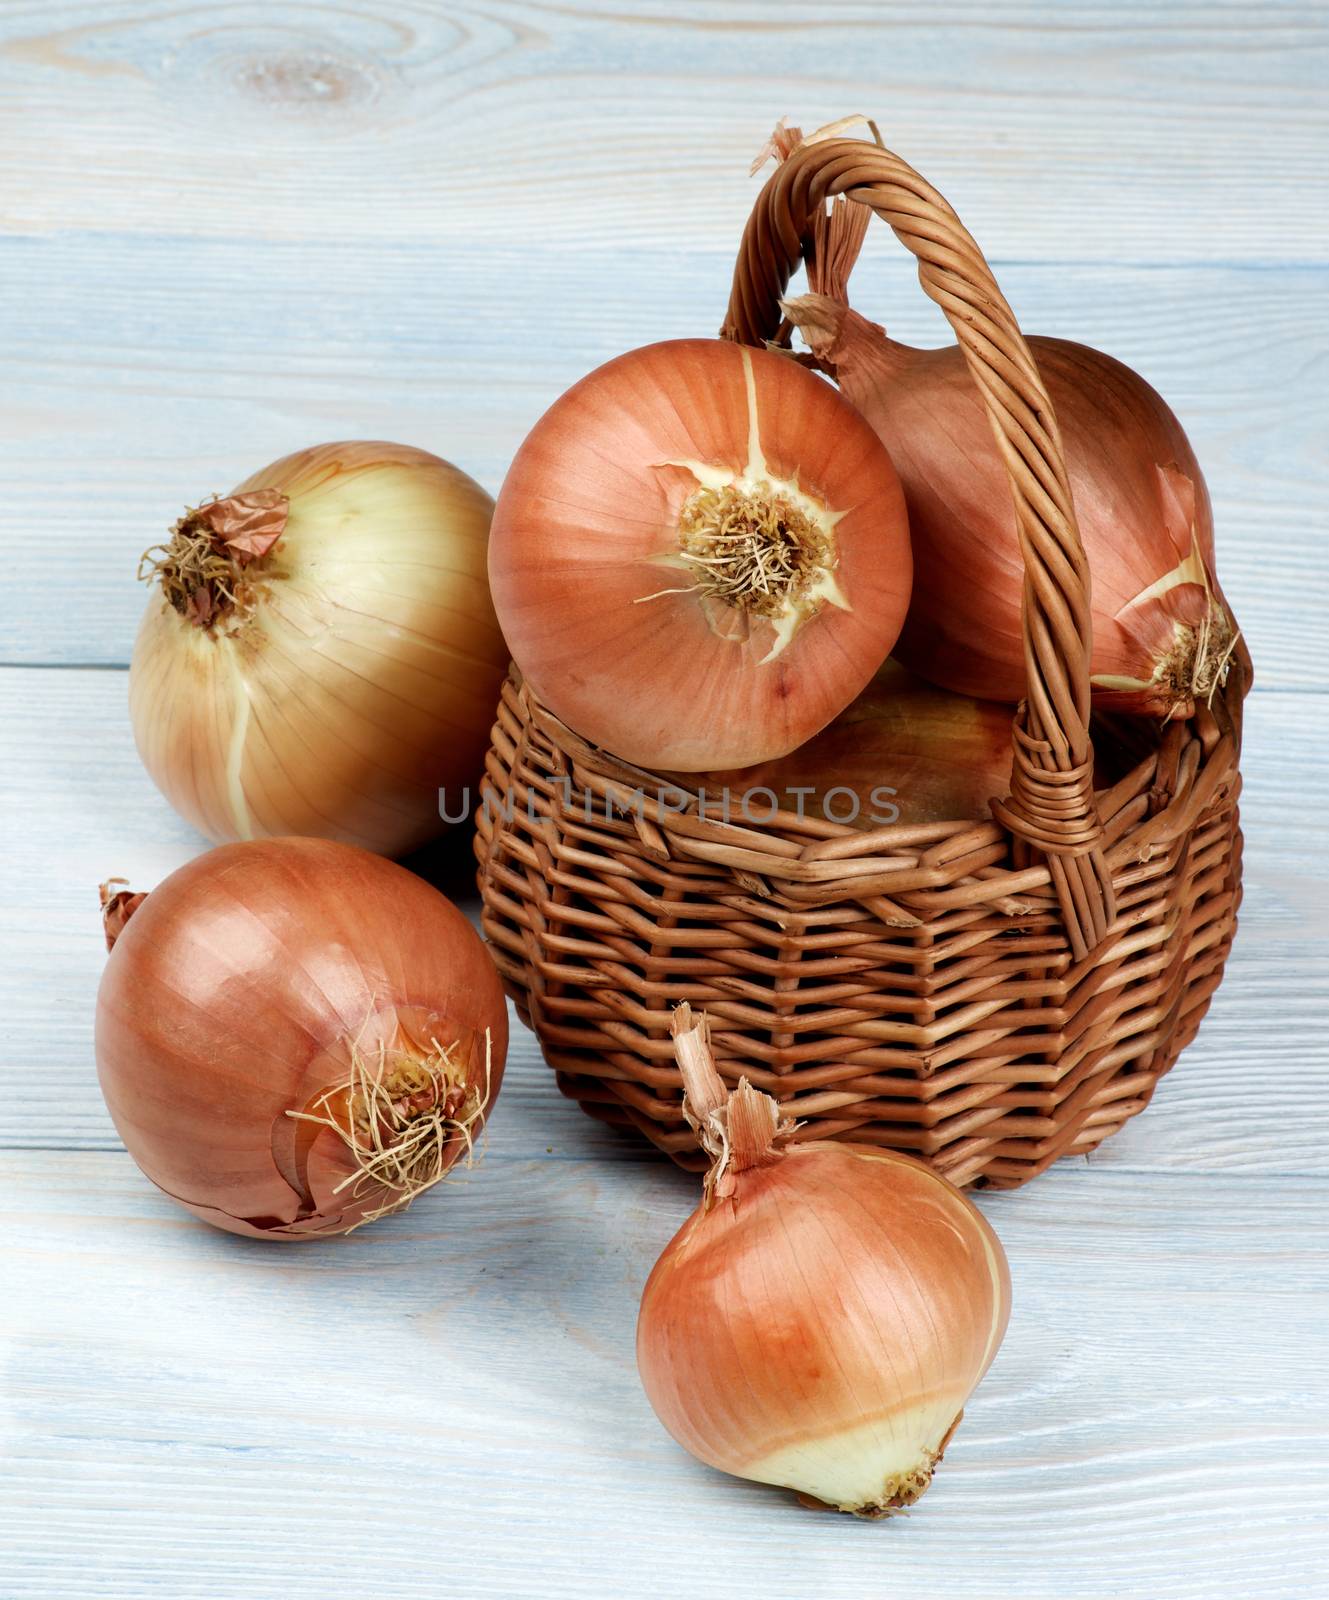 Ripe Golden Onions by zhekos